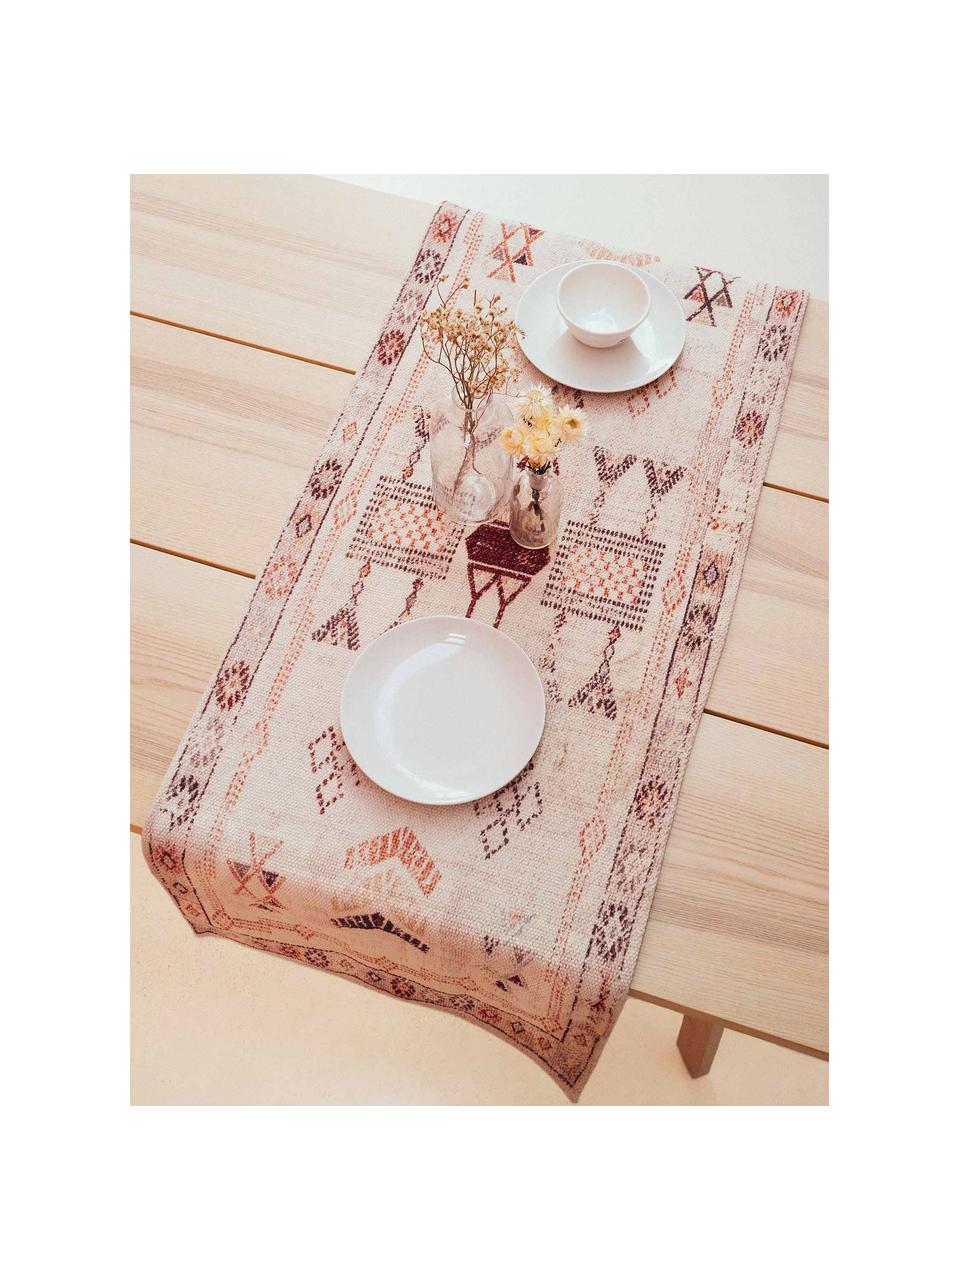 Katoenen tafelloper Tanger met ethnopatroon, 100% katoen, Crèmekleurig, terracottakleurig, 50 x 150 cm